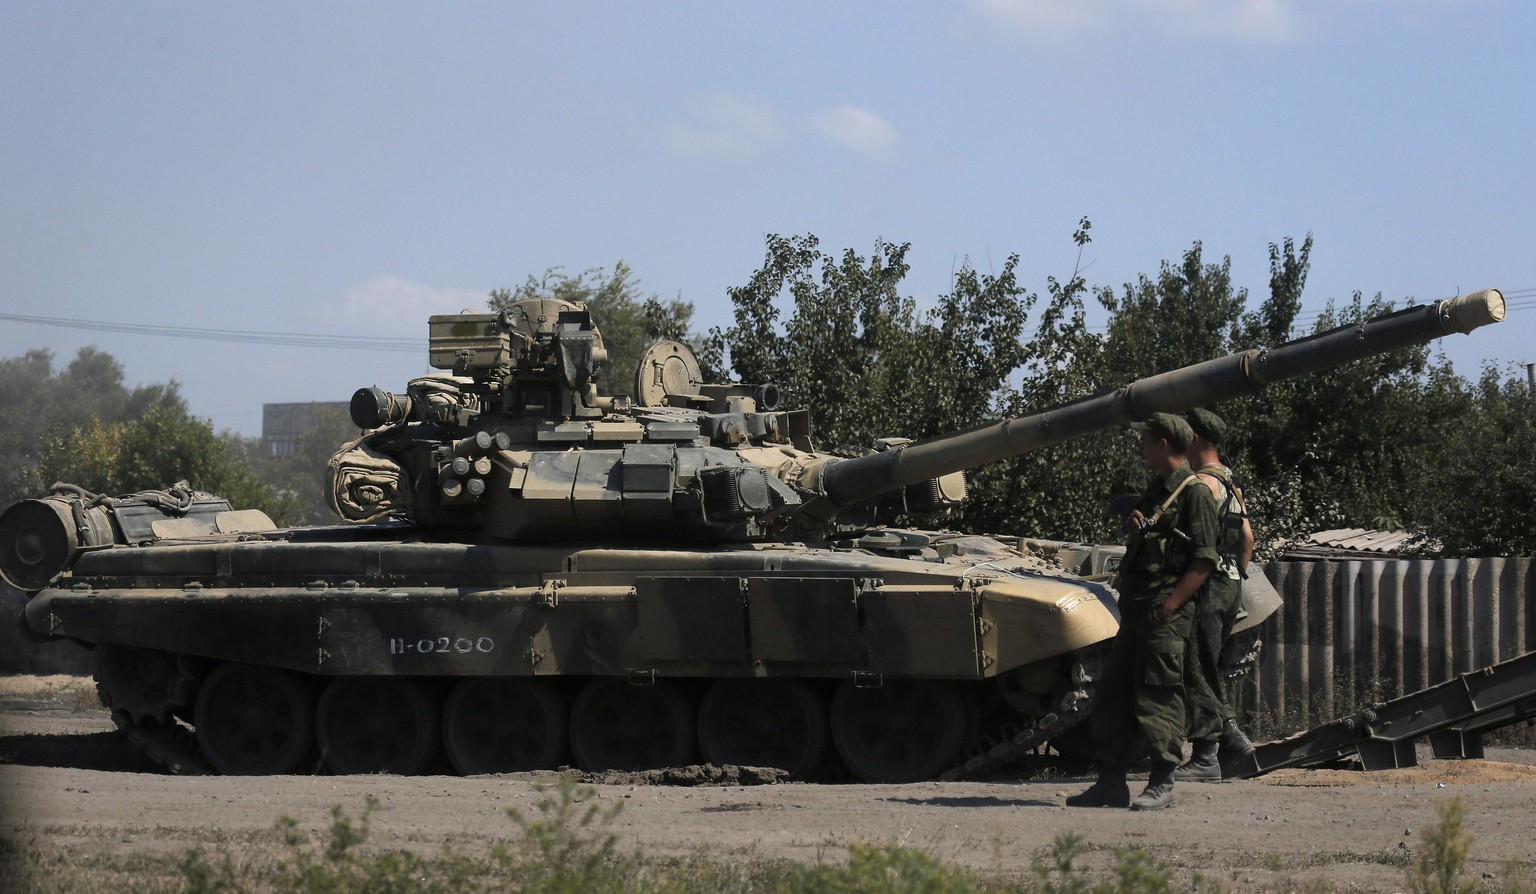 Ein russischer Panzer in der Nähe zur ukrainischen Grenze. Gemäss US-Angaben sollen russische Truppen die Grenze erneut überquert haben.